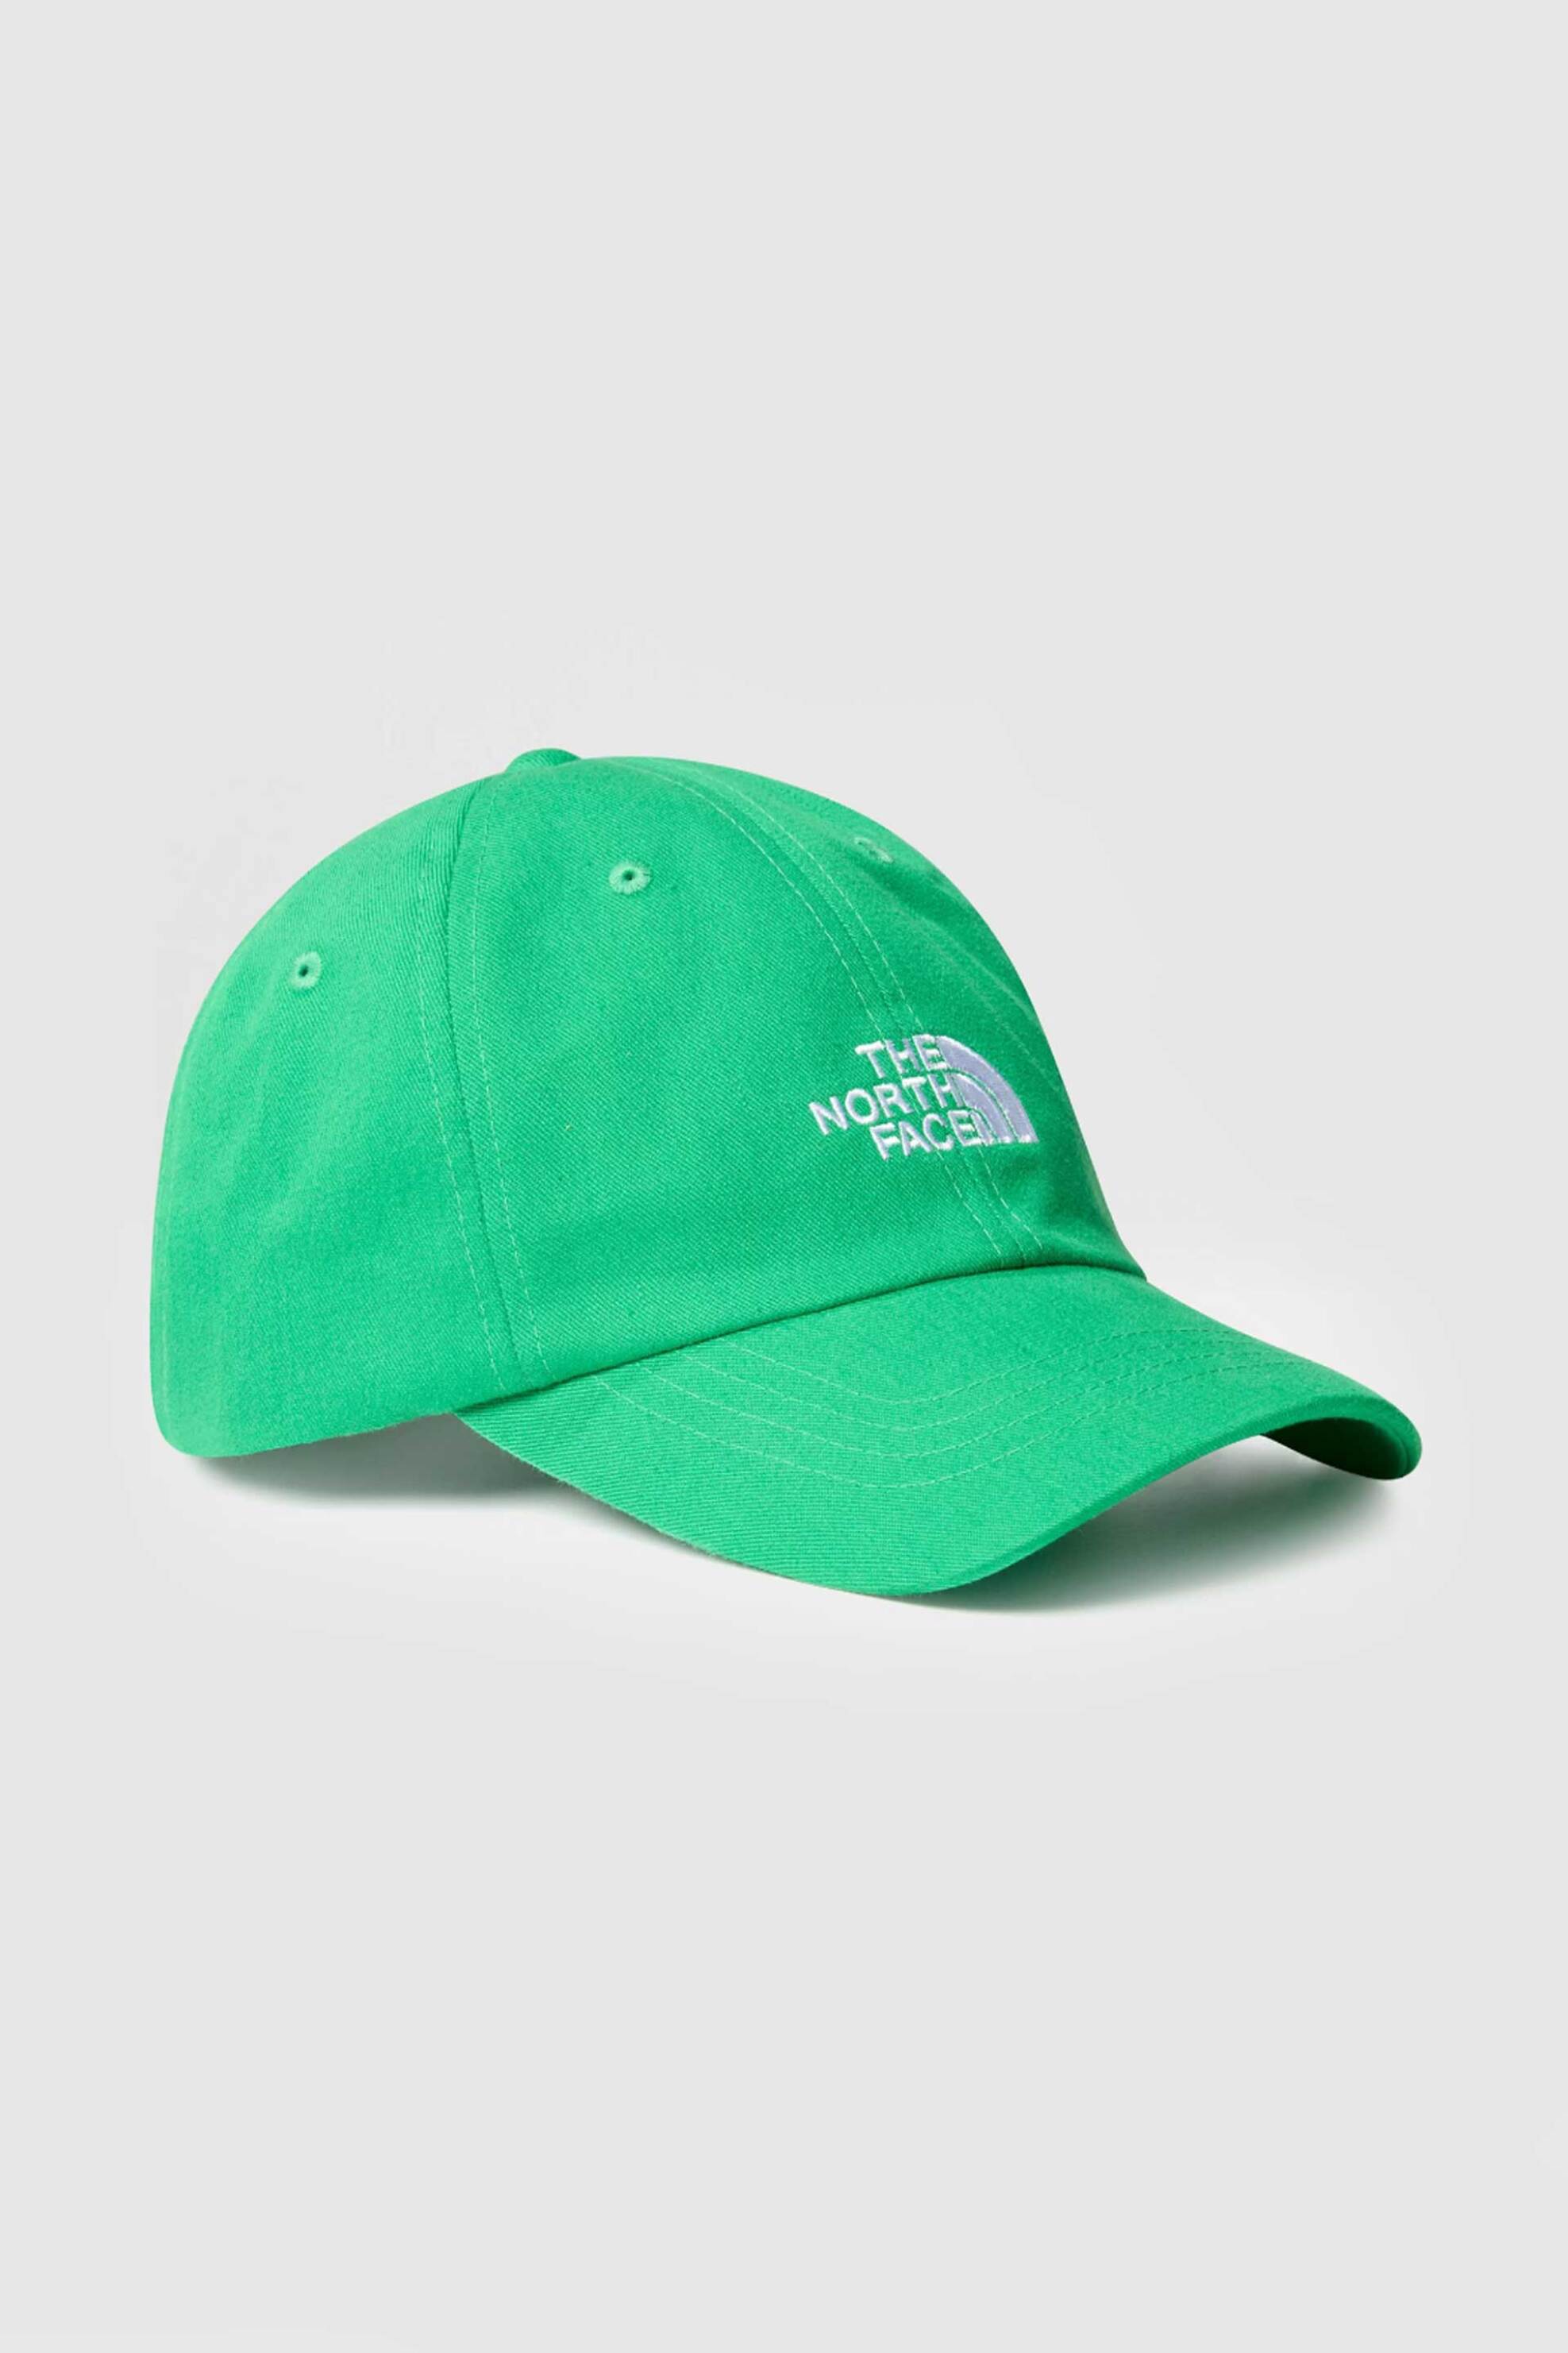 Ανδρική Μόδα > Ανδρικά Αξεσουάρ > Ανδρικά Καπέλα & Σκούφοι The North Face unisex καπέλο jockey μονόχρωμο "Norm Cap" - NF0A7WHOPO81 Πράσινο Tropical